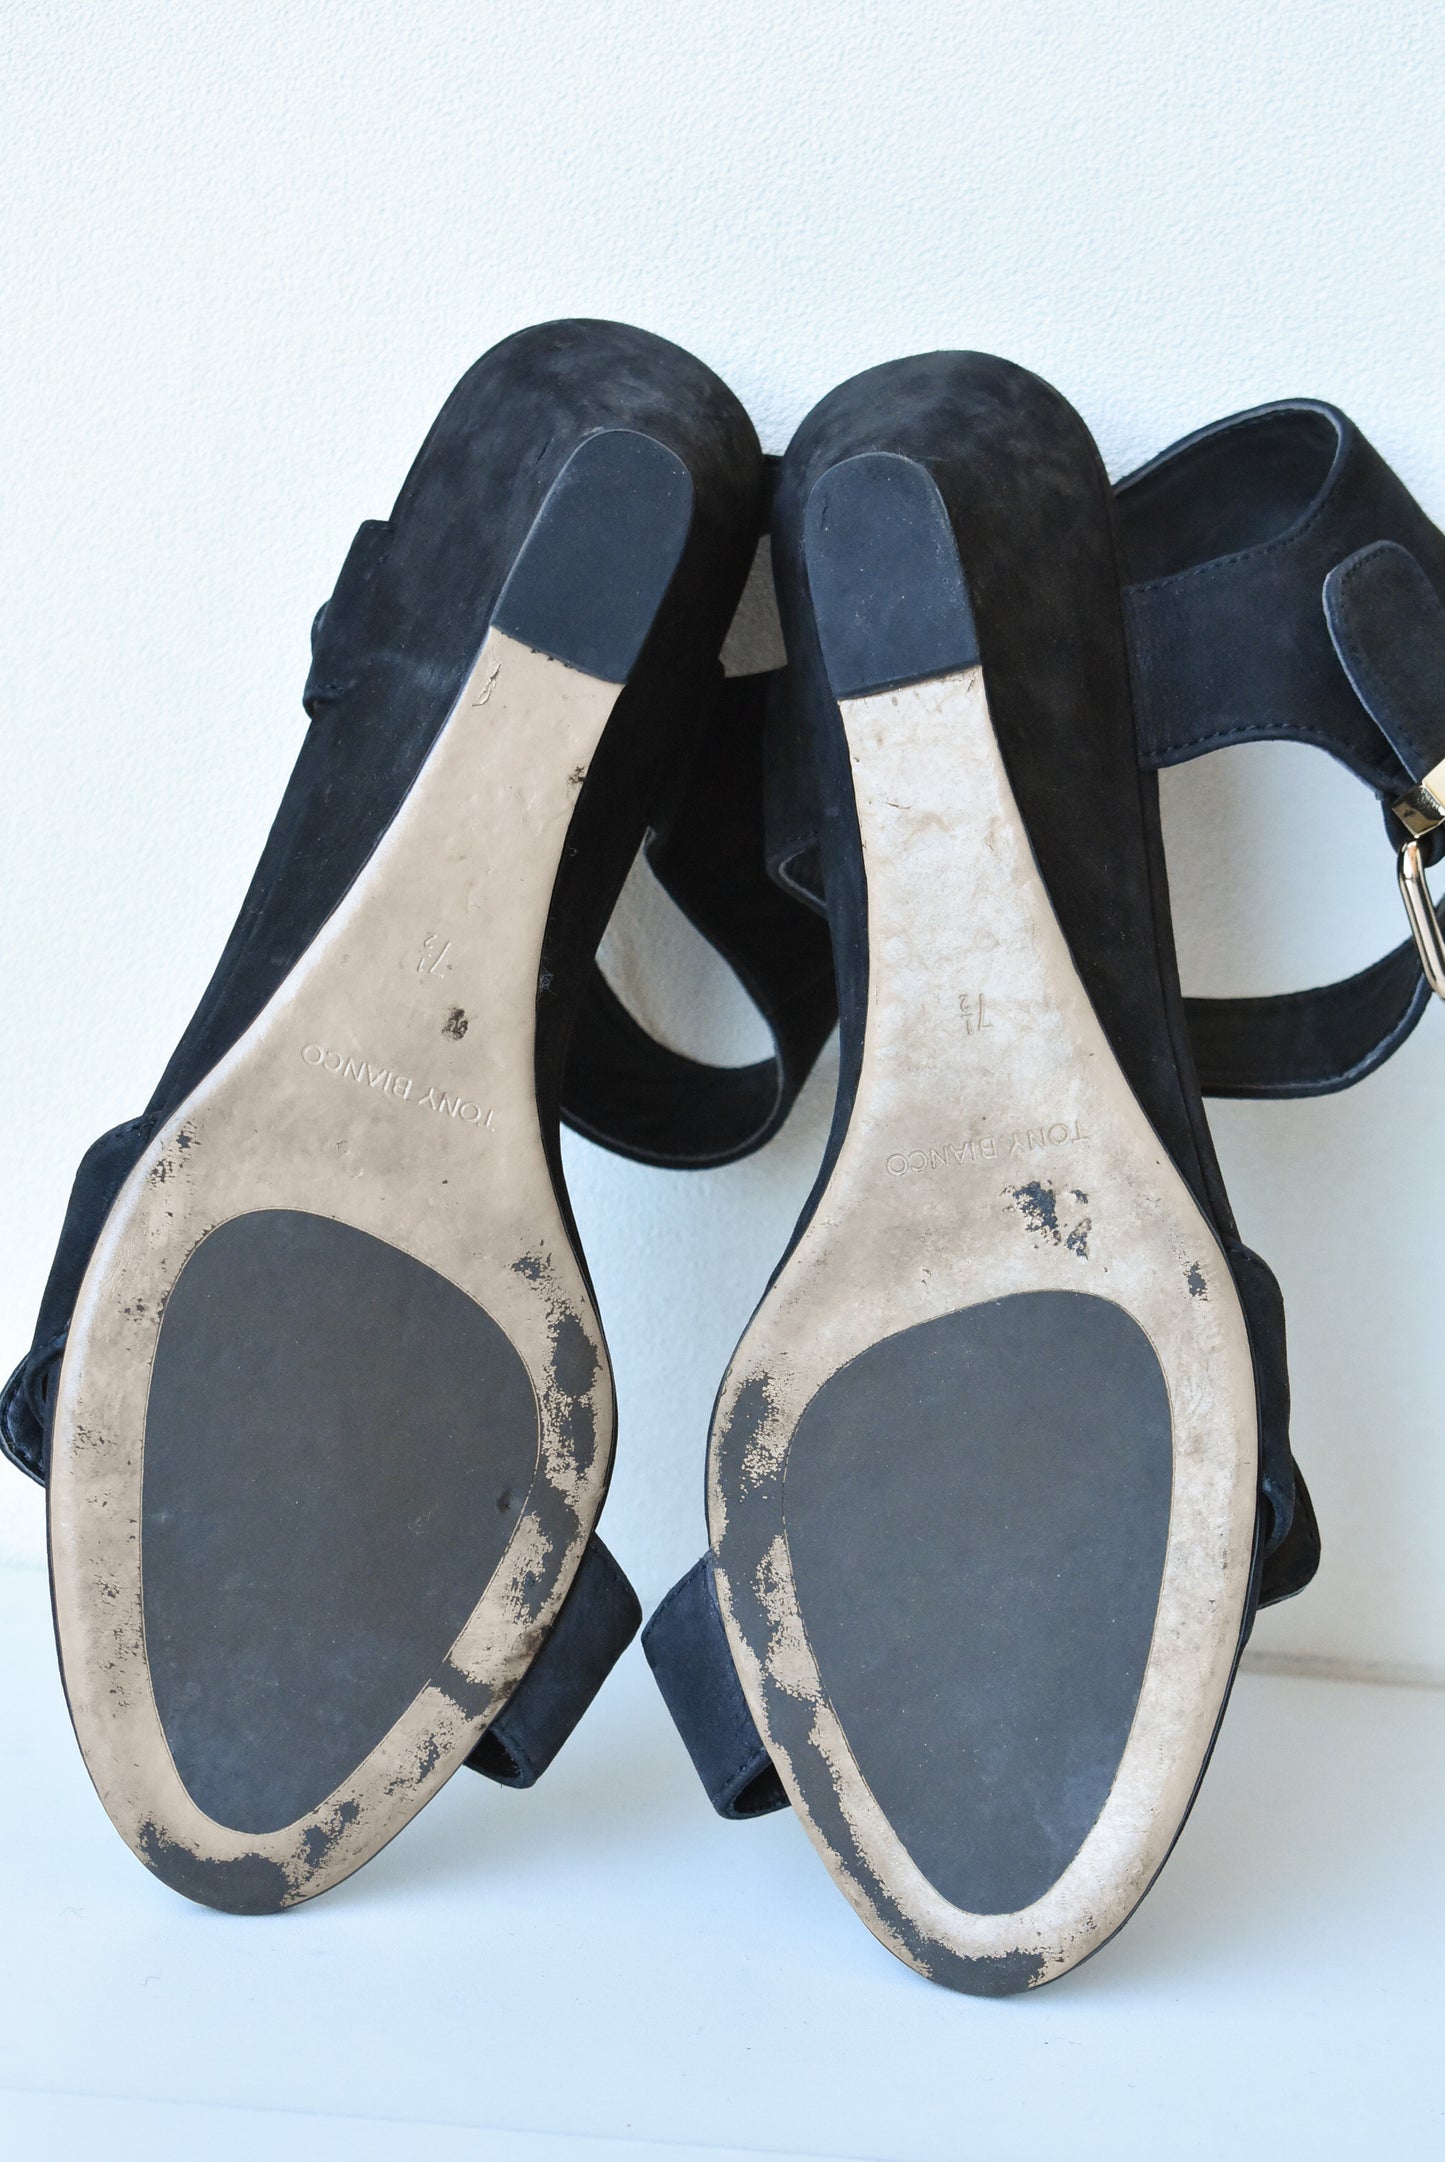 Tony Bianco sandals, 7.5